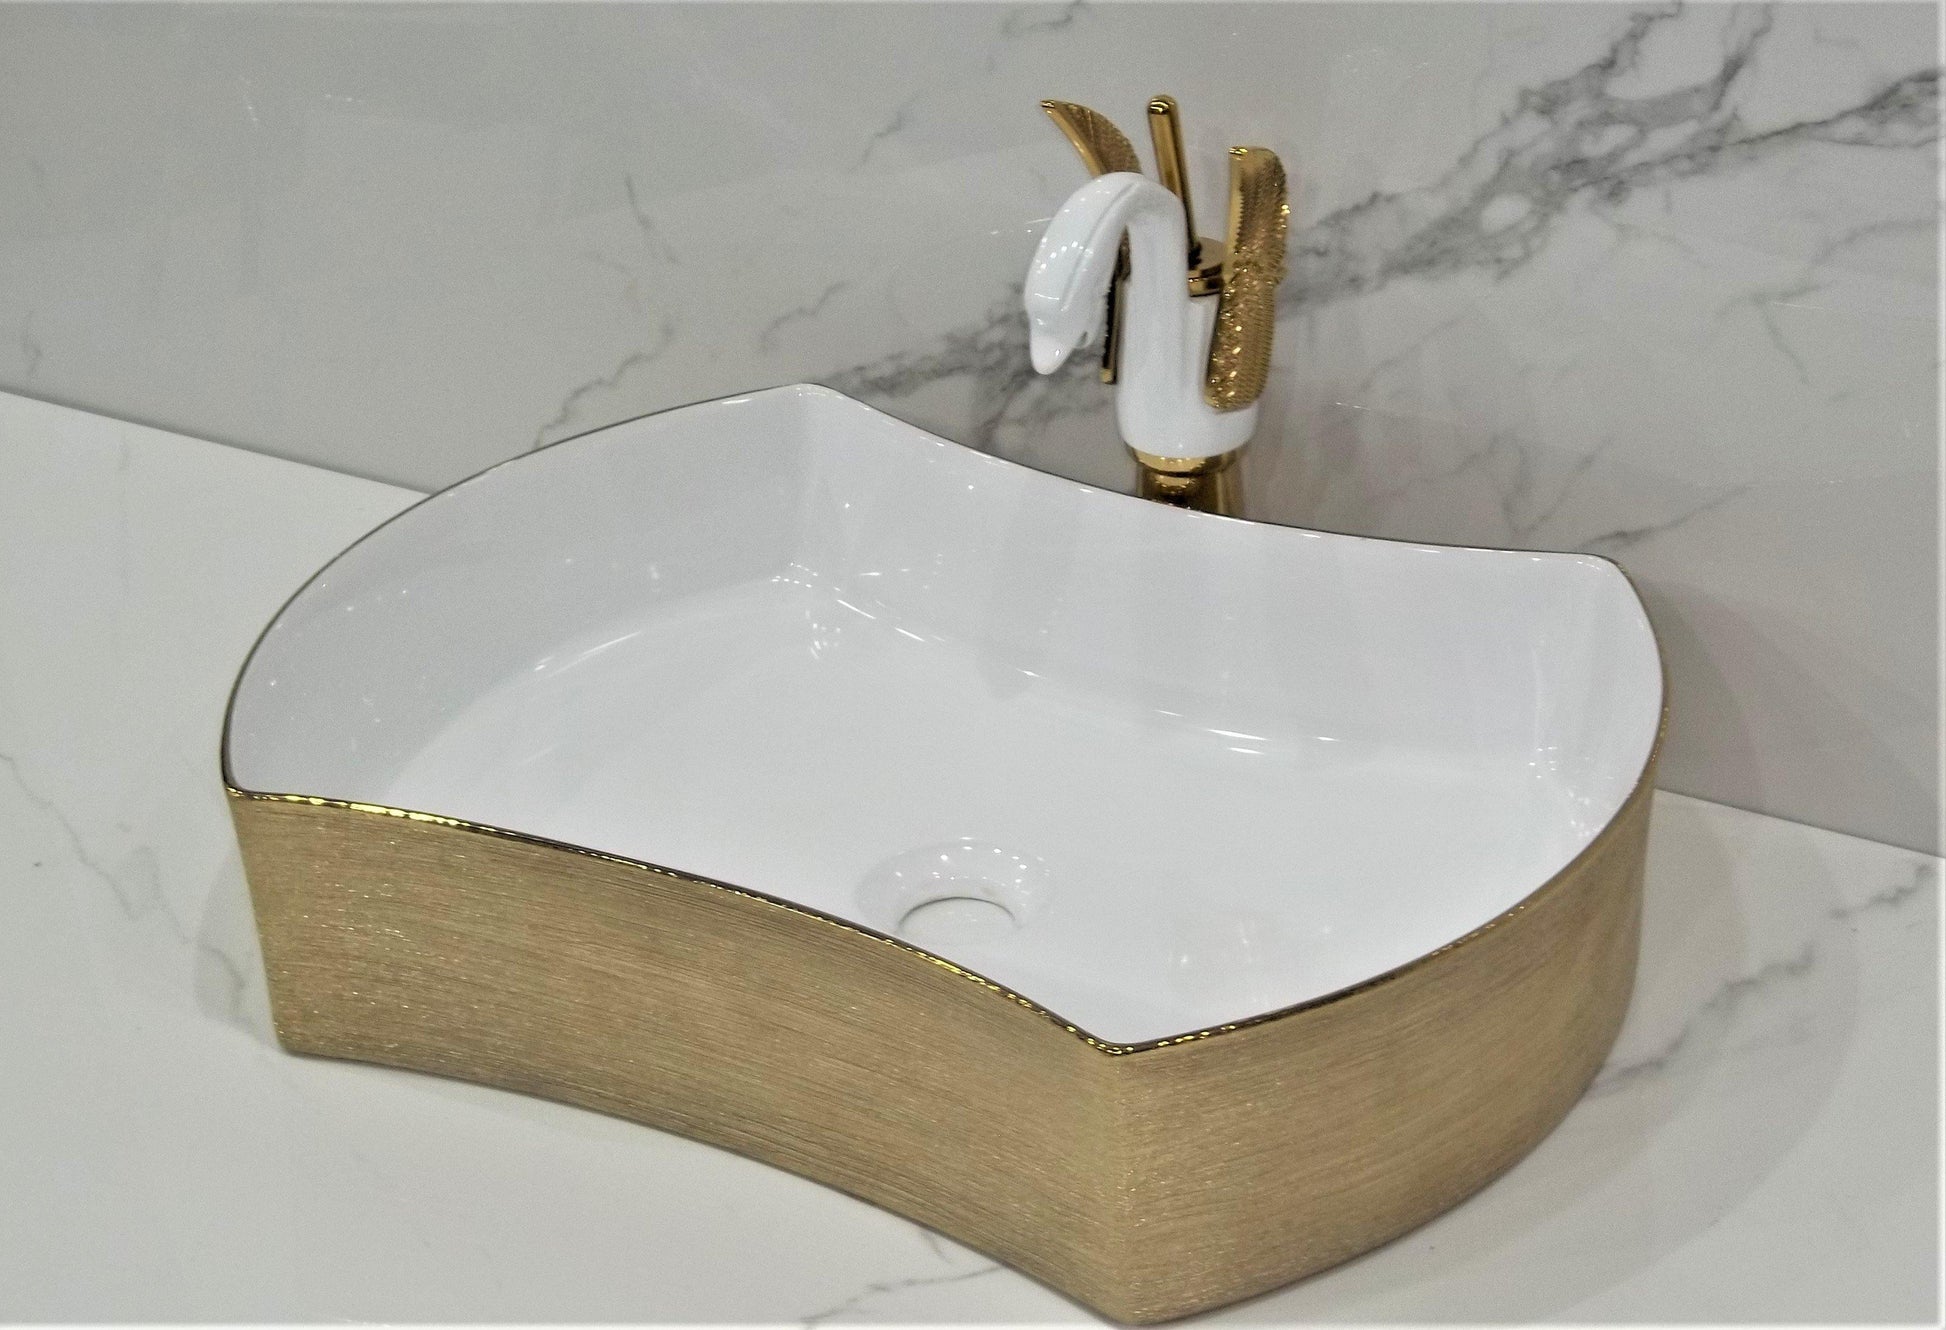 Table Top Premium Designer Ceramic Wash Basin/Vessel Golden White Designer for Bathroom 21 x 15 x 5 Inch (Gold Color) - Bath Outlet